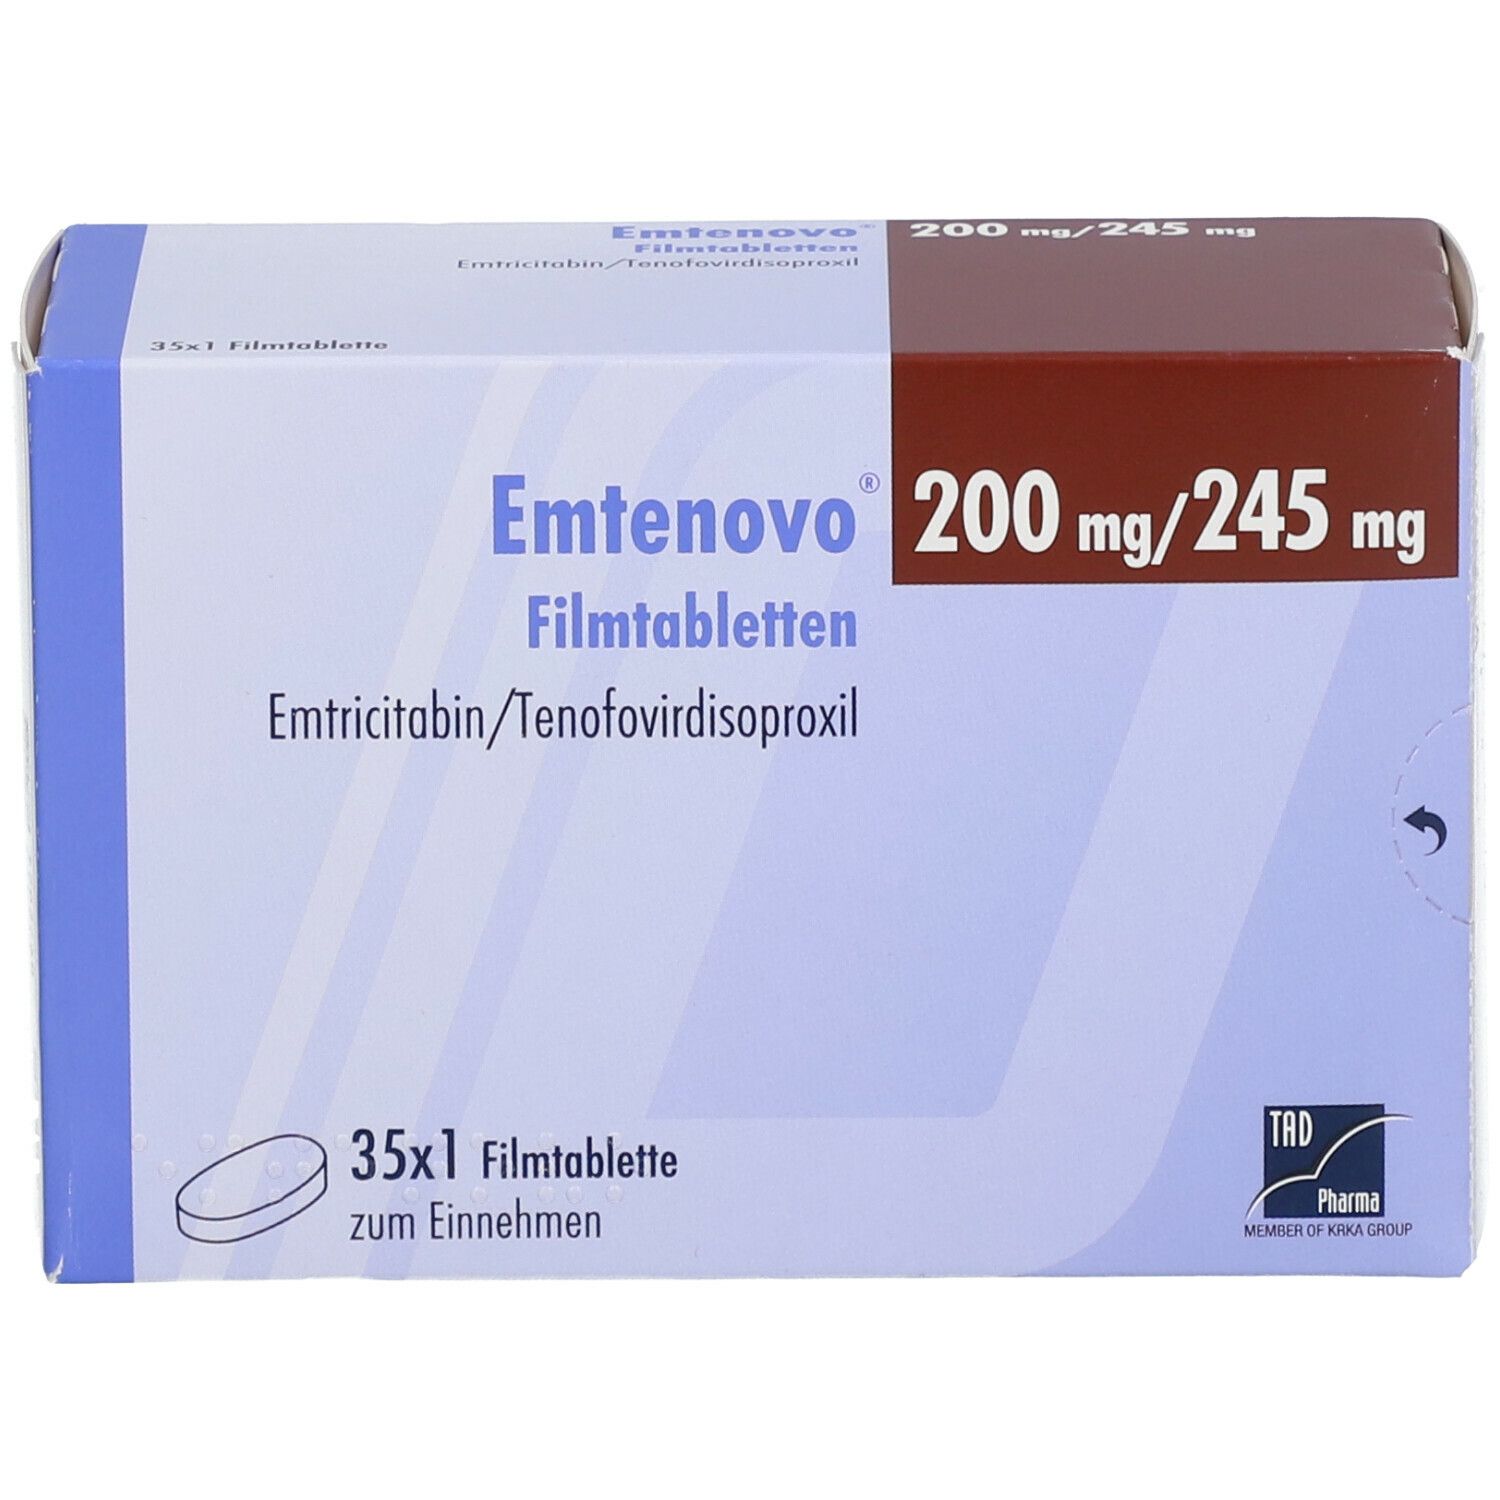 Emtenovo® 200 mg/245 mg